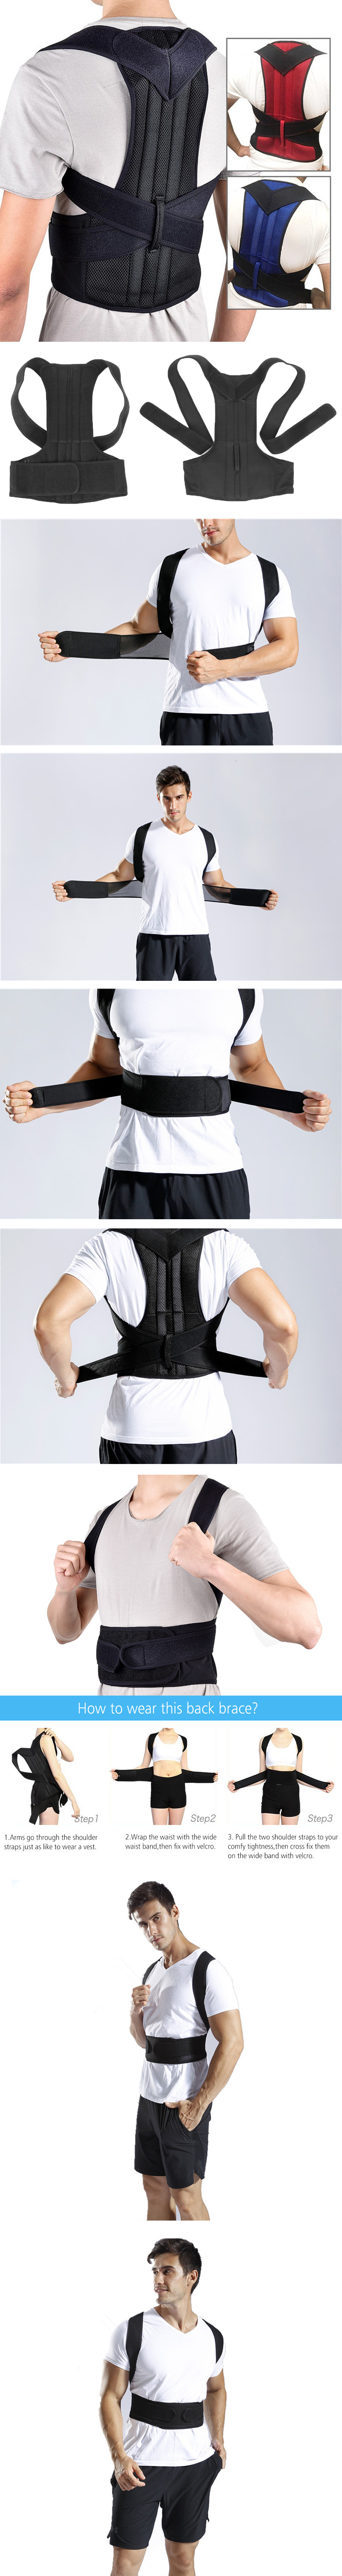 Back-Support-Protection-Back-Shoulder-Posture-Pain-Relief-Corrector-Belt-Strap-Reinforcement-Orthosi-1400882-2